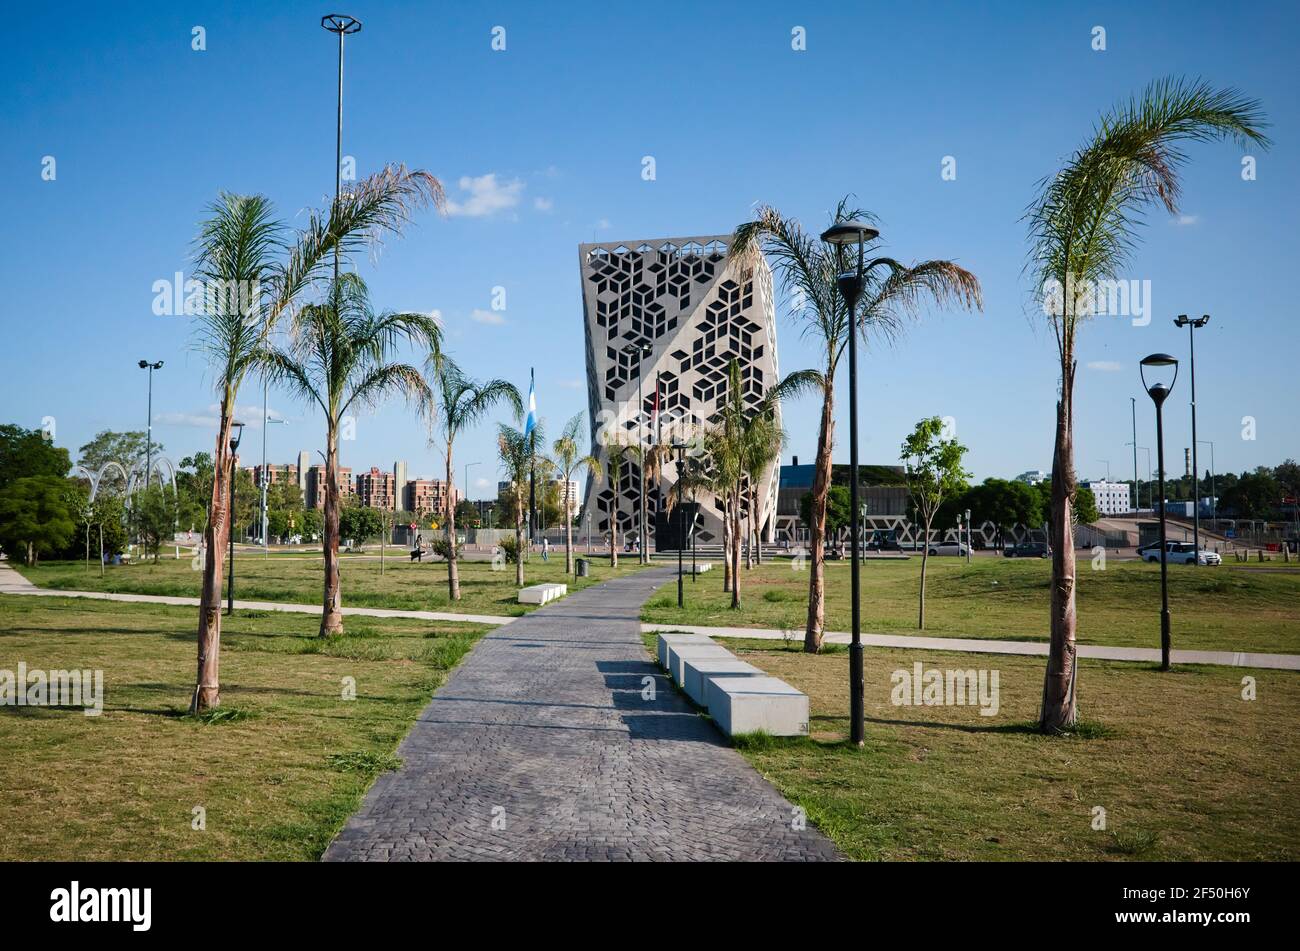 Cordoba, Argentine - janvier 2020: Parc public appelé Parque Centro Civico, allée de palmiers et bâtiment du Centro Civico dans le style futuriste Banque D'Images